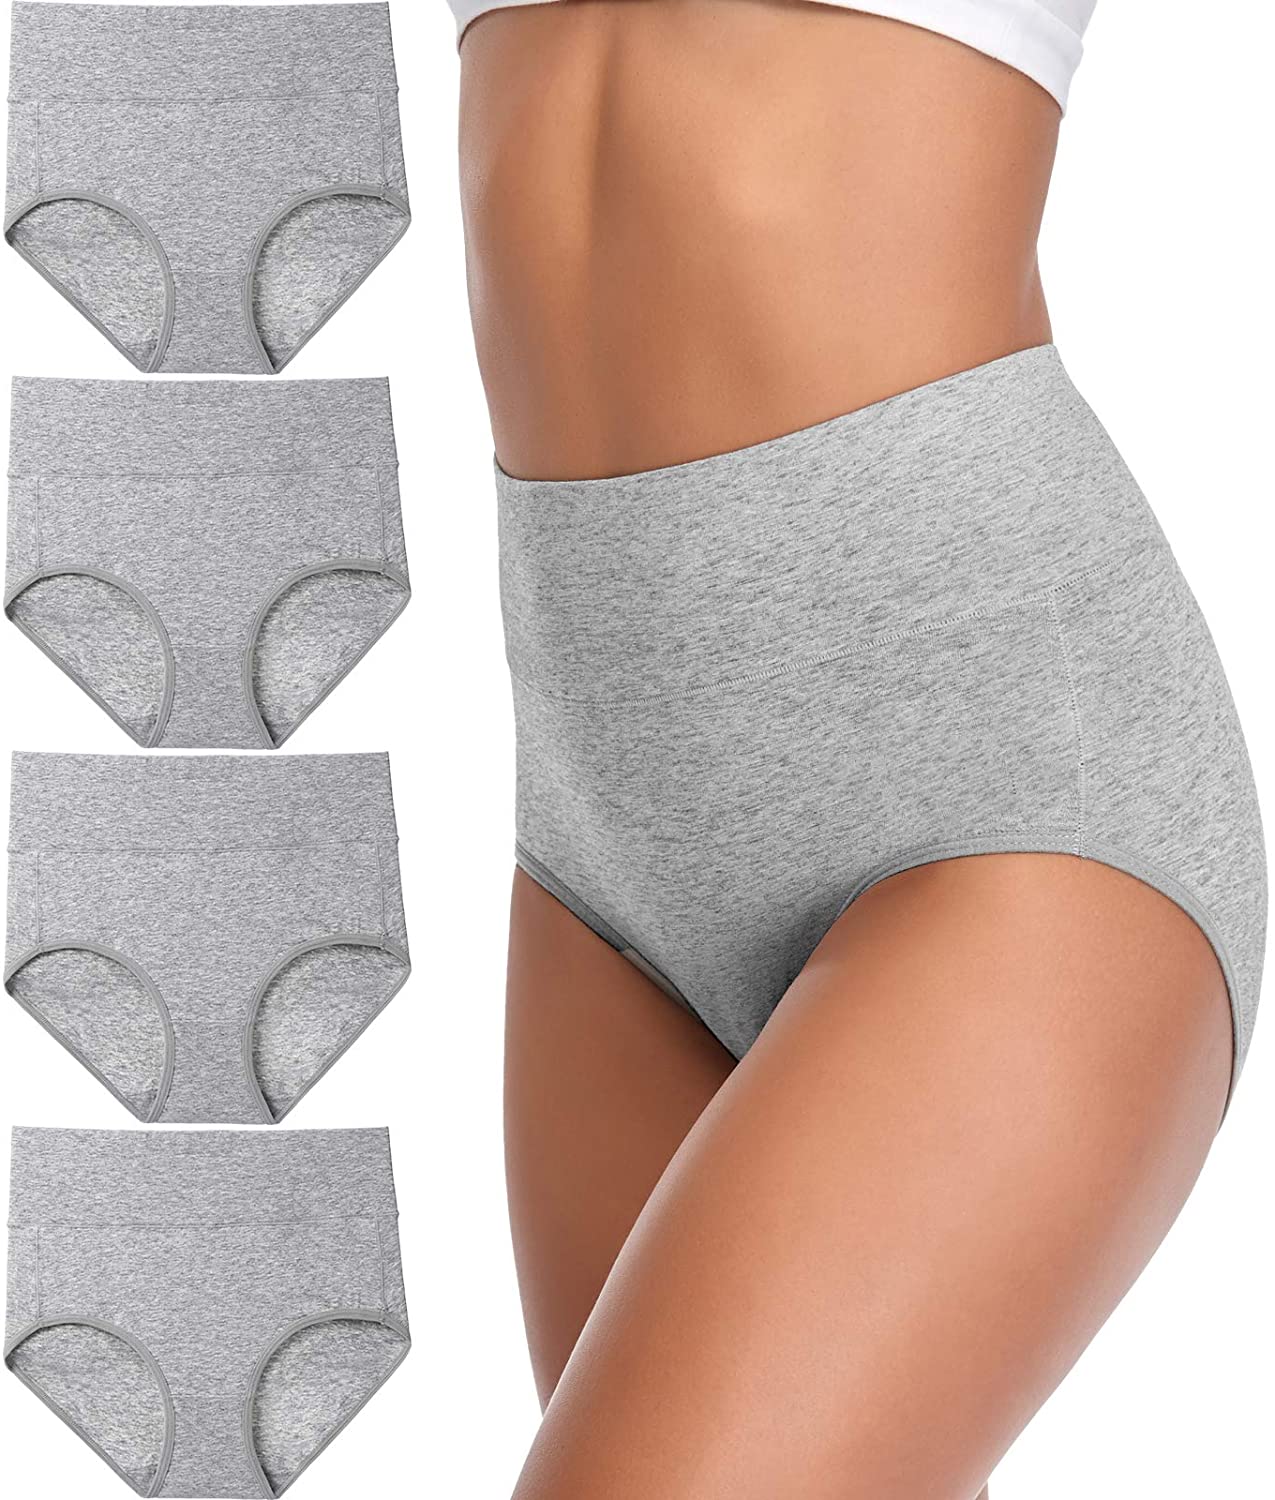 Annenmy Women's High Waist Cotton Underwear Soft Brief Panties Regular and Plus  Size